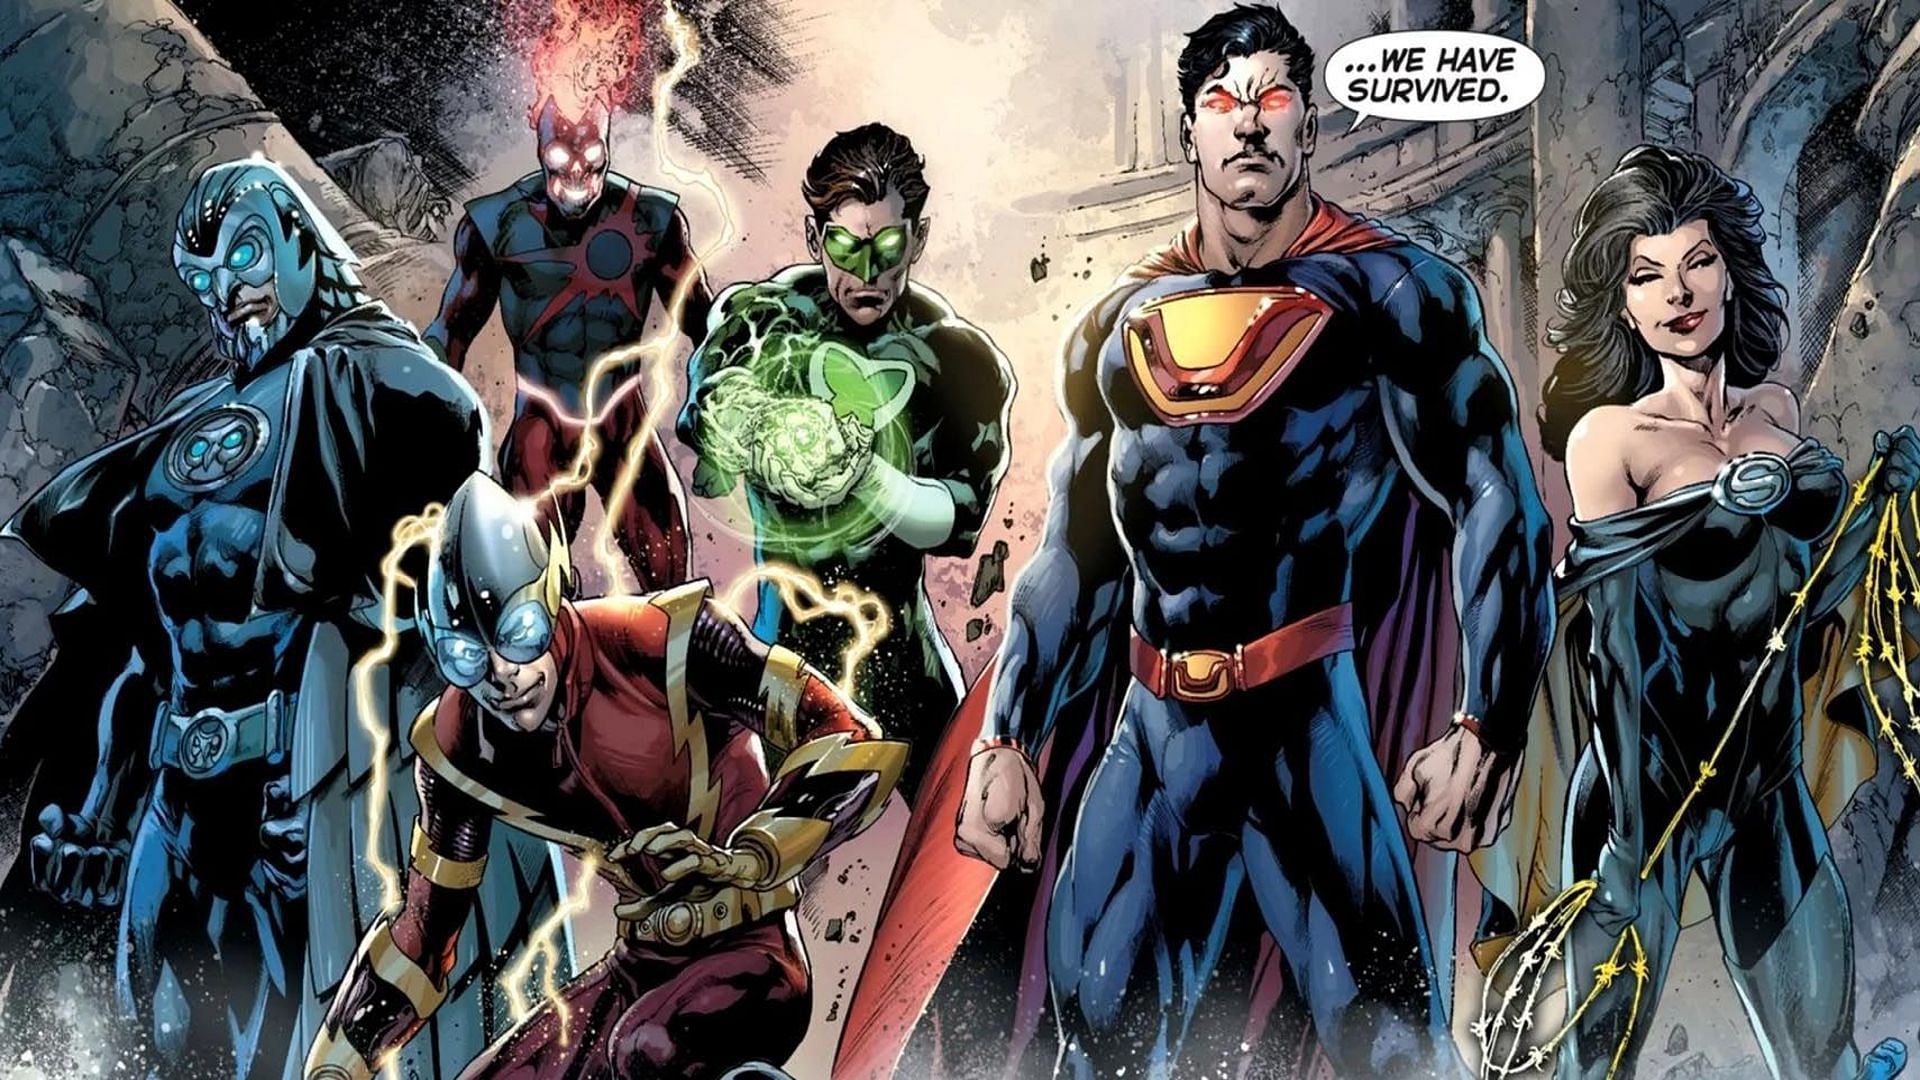 Justice League of supervillains (Image via DC Comics)